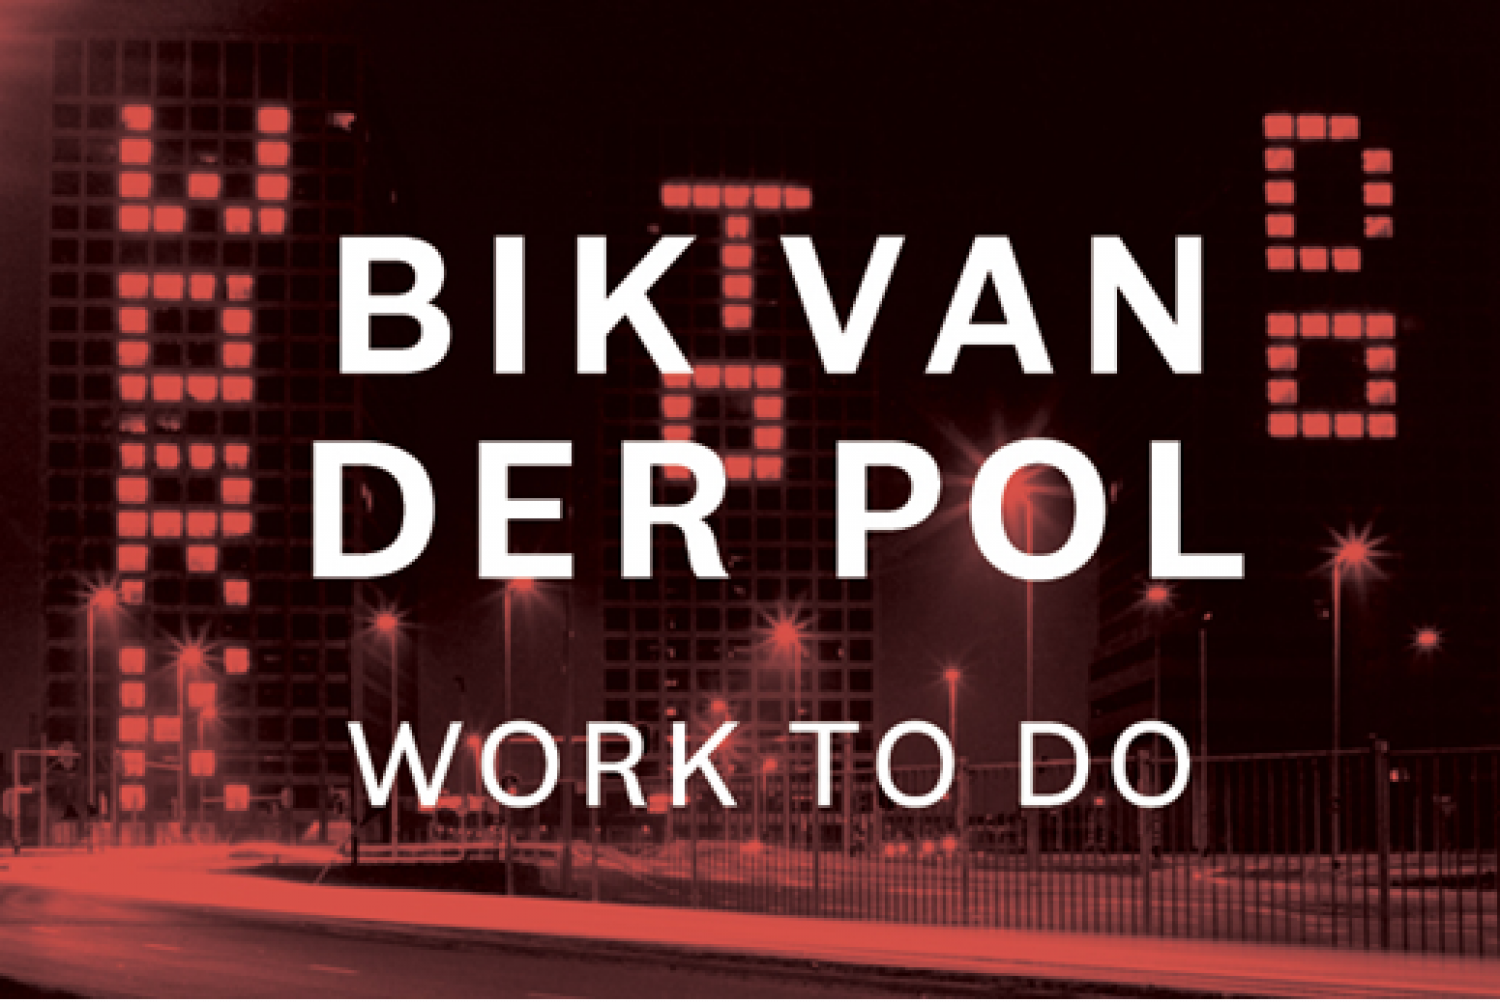 State of the Art essay: Bik Van der Pol – Work To Do